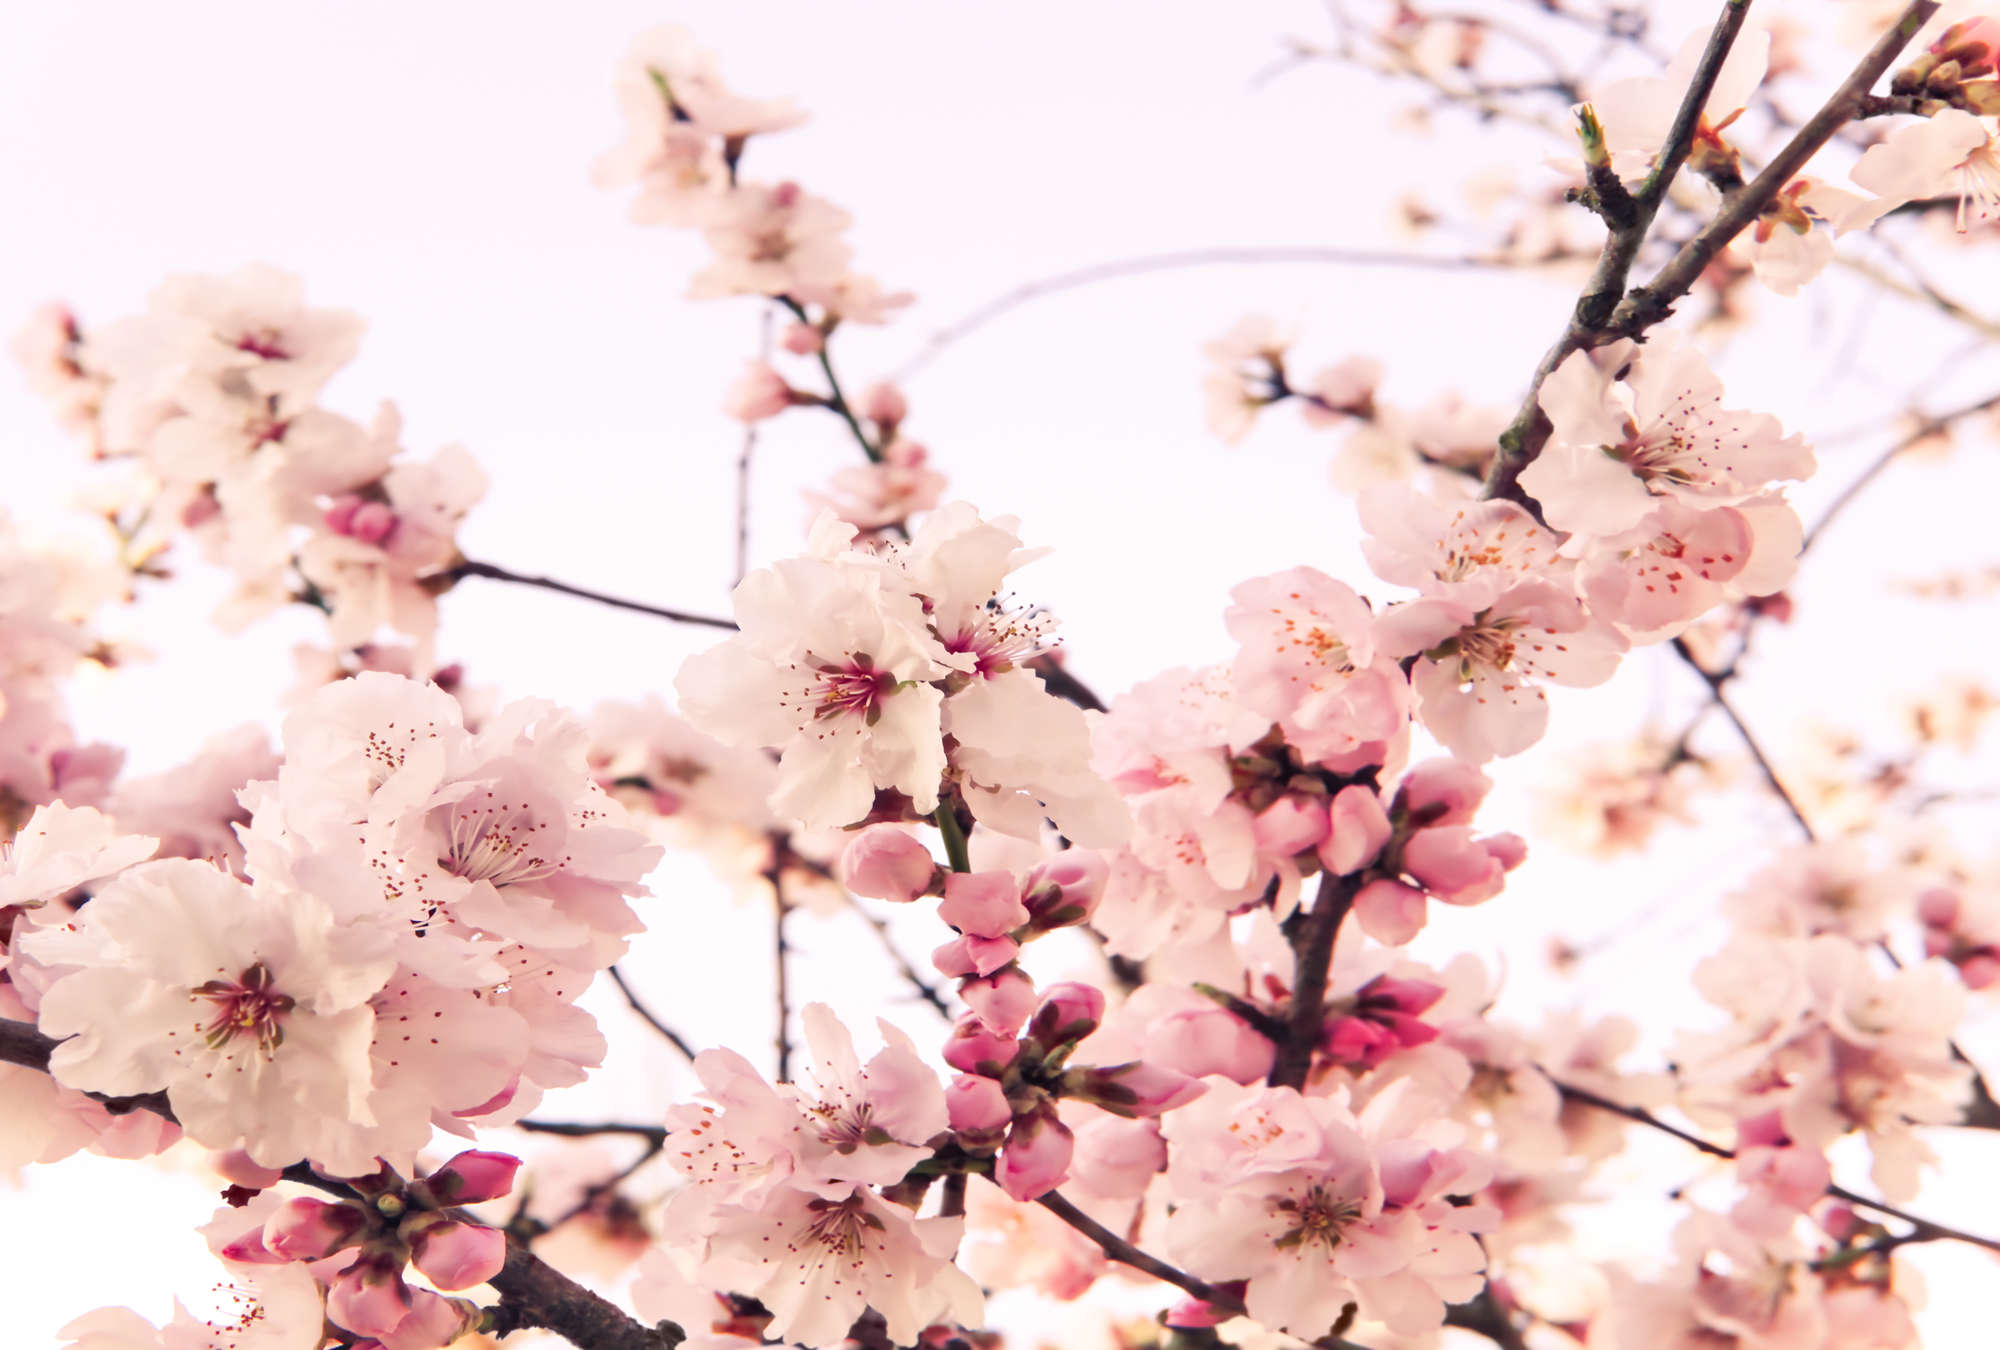             Carta da parati fotografica di piante con fiori di ciliegio in fiore su vello liscio madreperlato
        